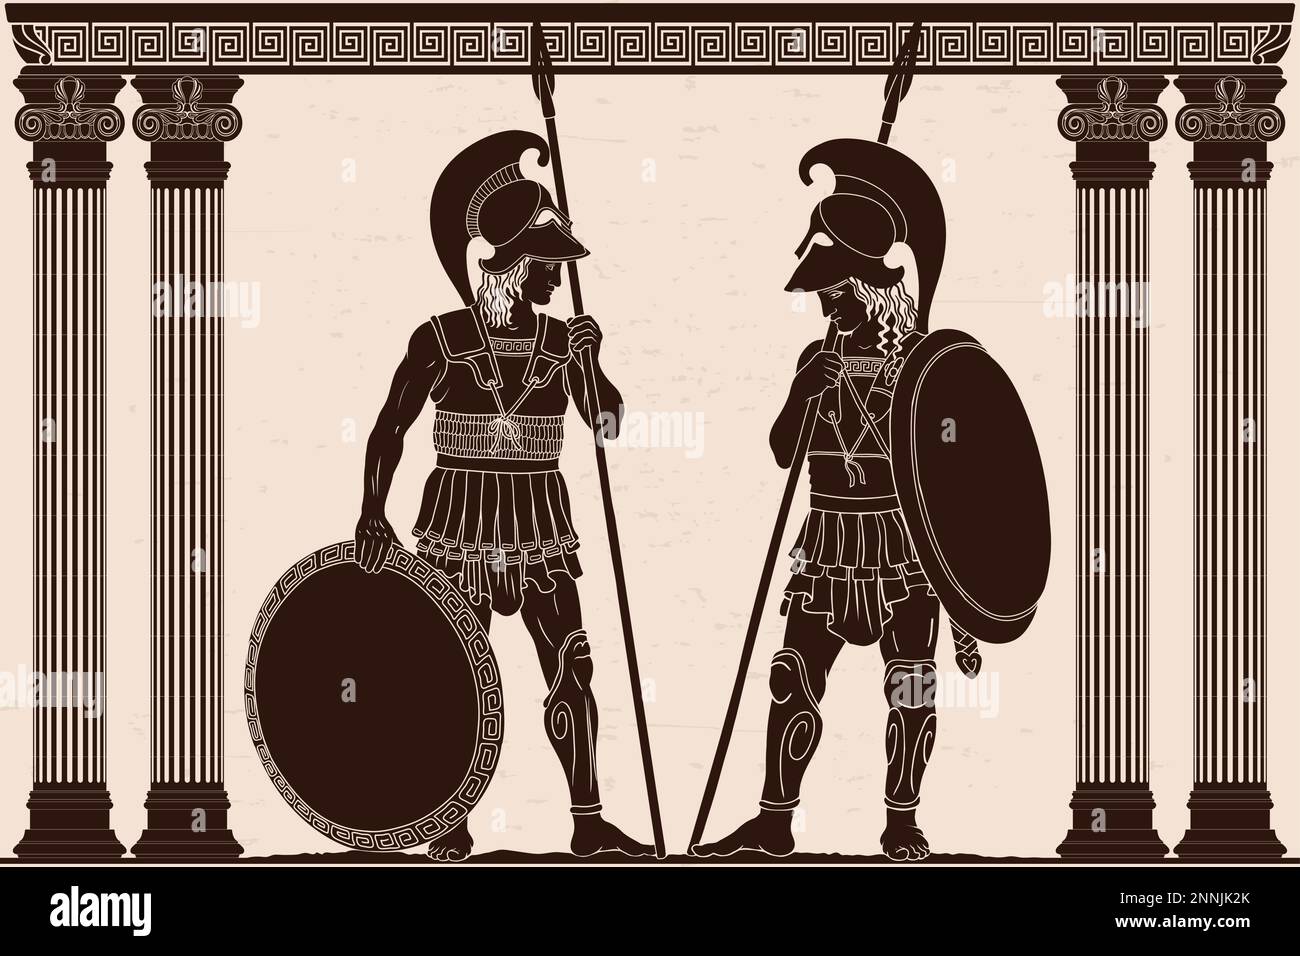 Ancient Greek warrior. Stock Vector